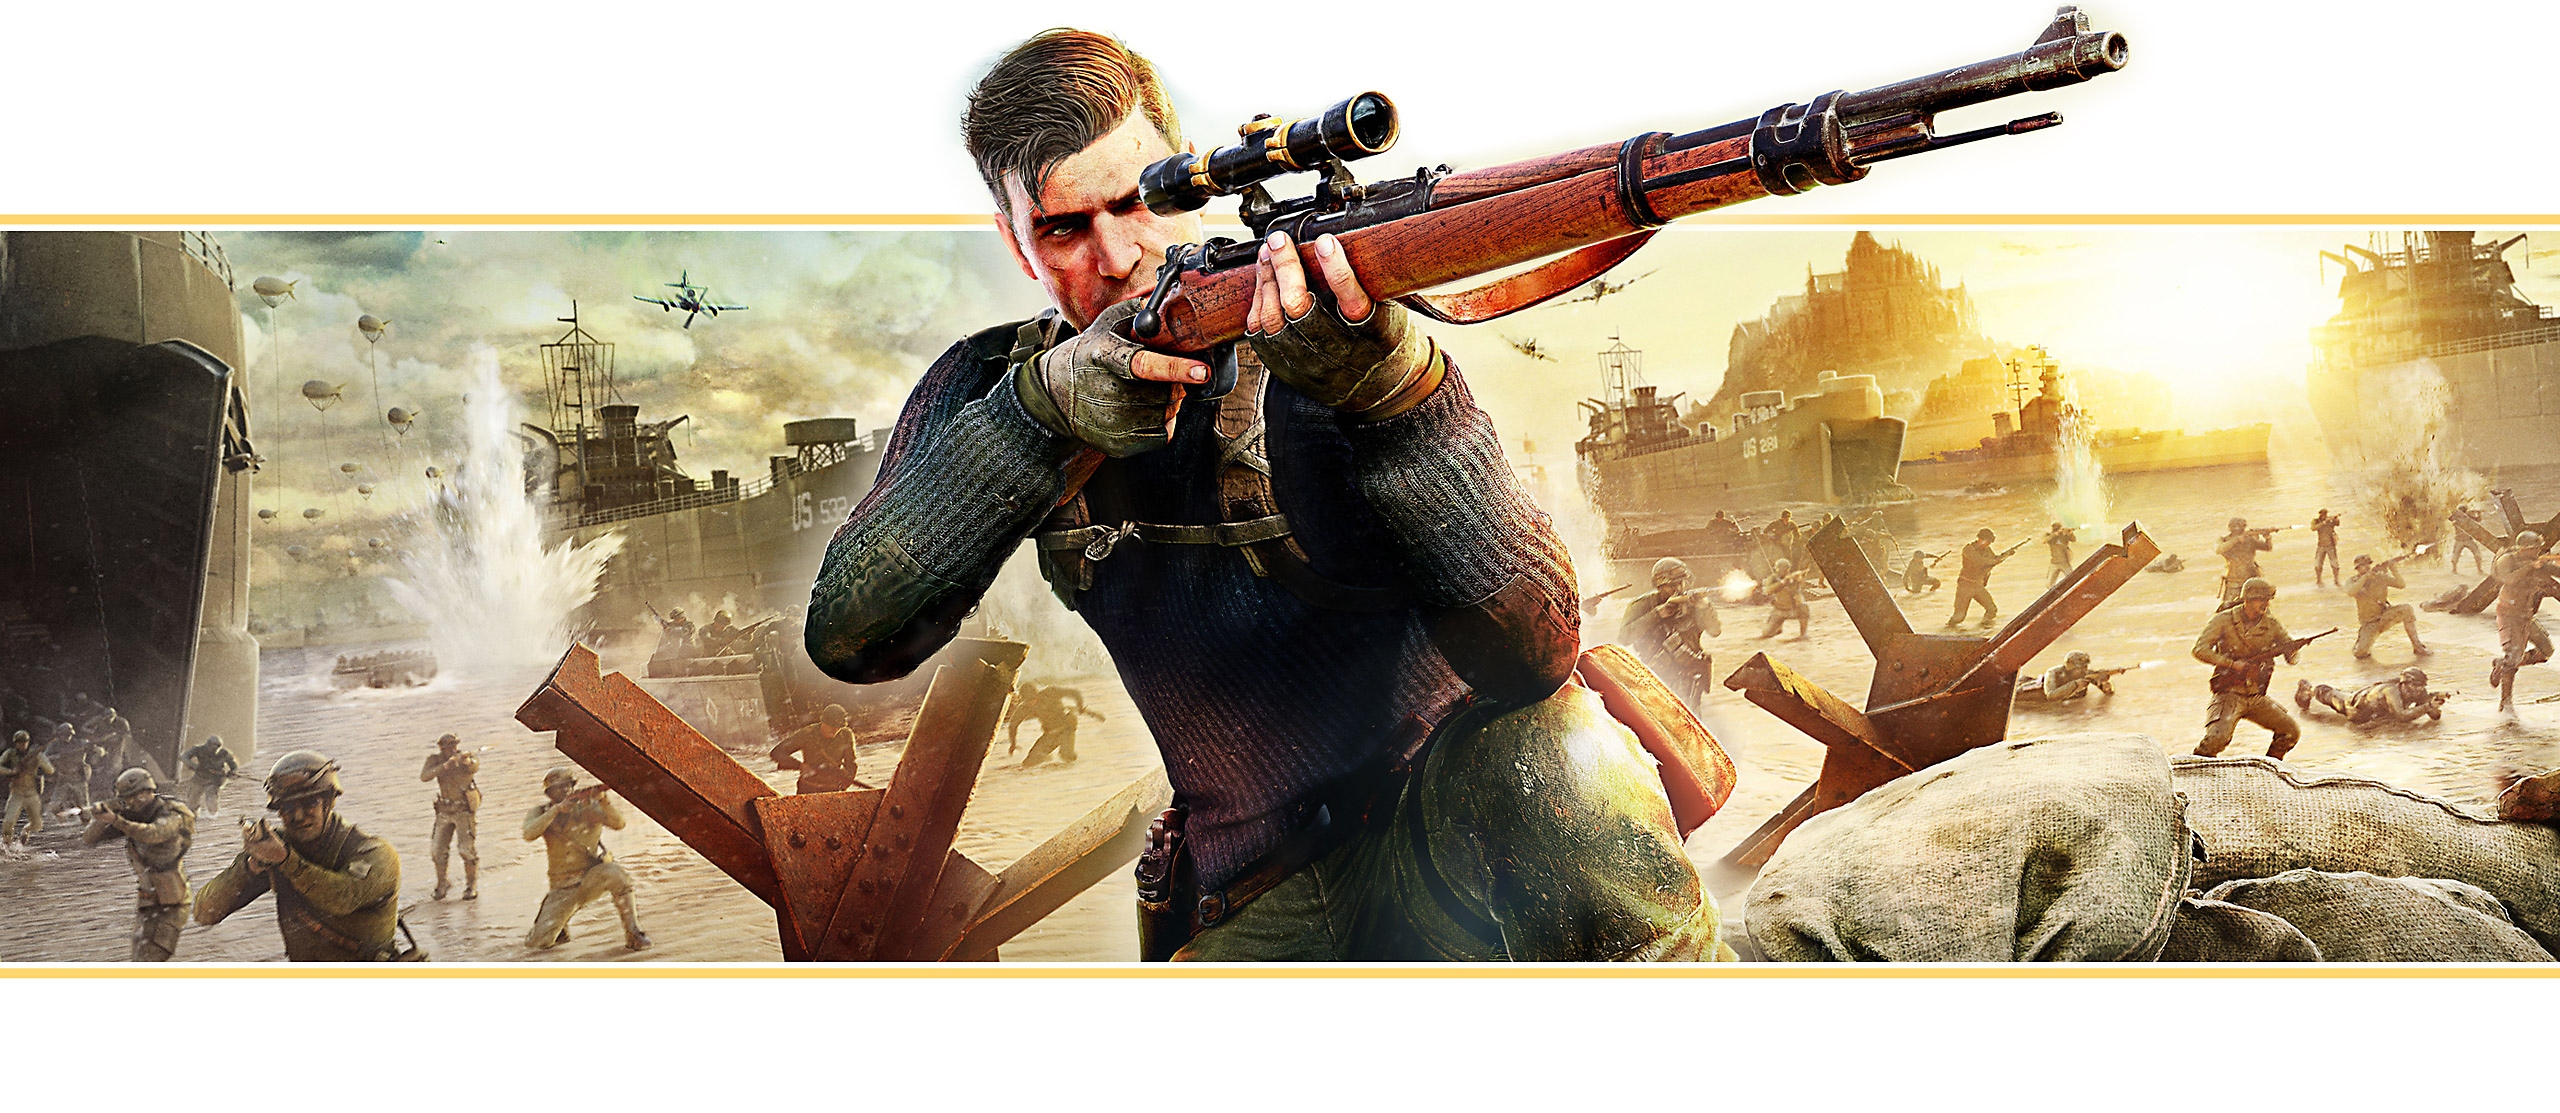 《Sniper Elite 5》的横幅展示了游戏主题宣传海报：主角端起狙击步枪瞄准